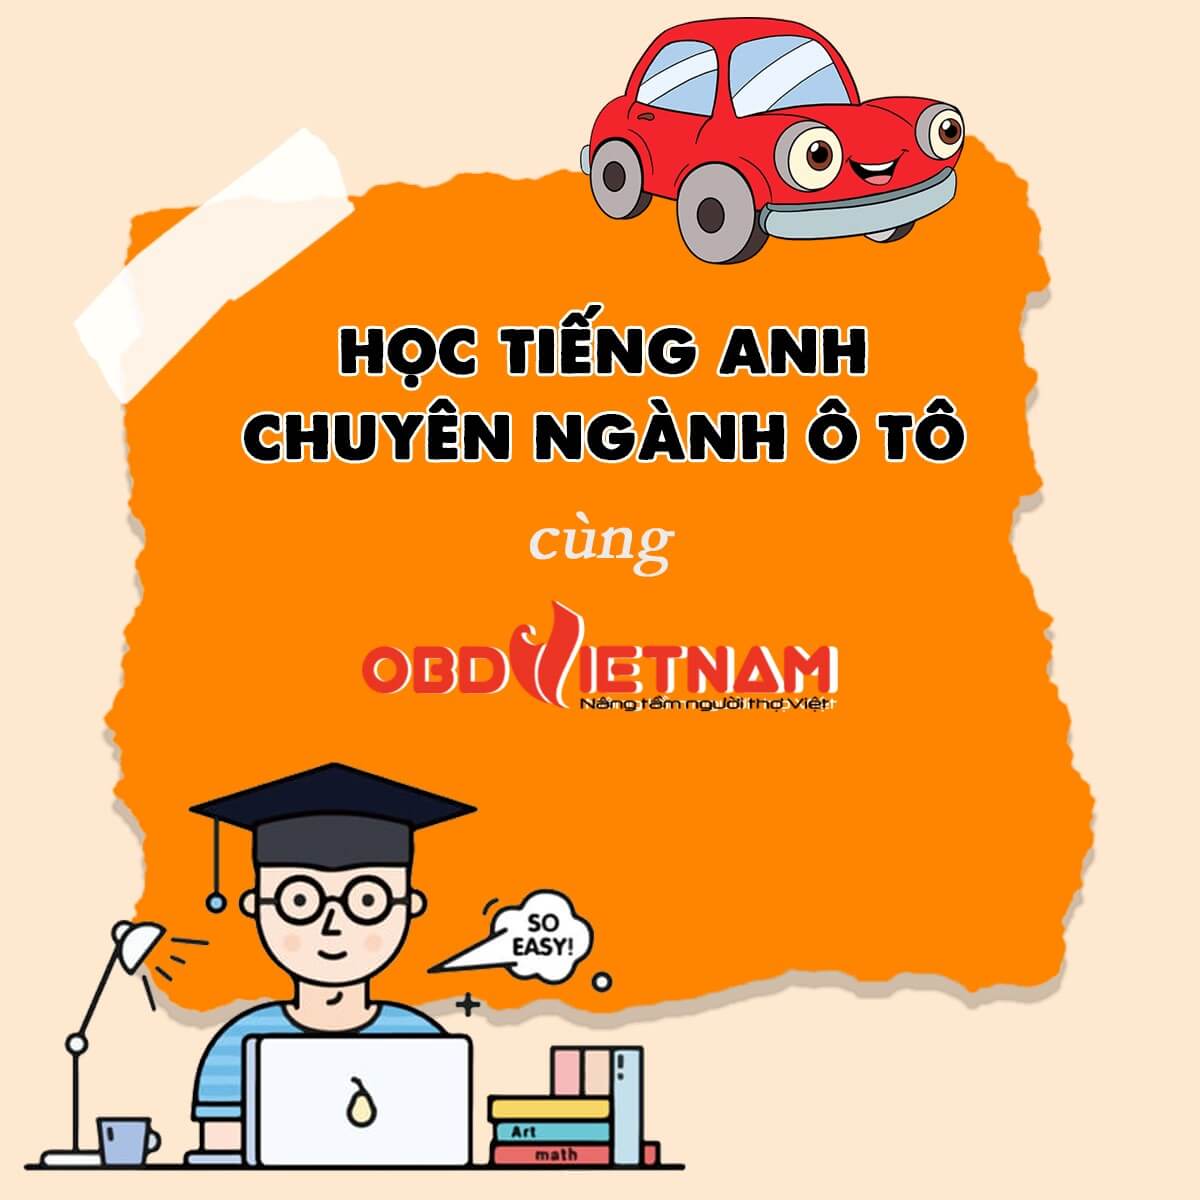 Học tiếng Anh dễ dàng cùng OBD Việt Nam